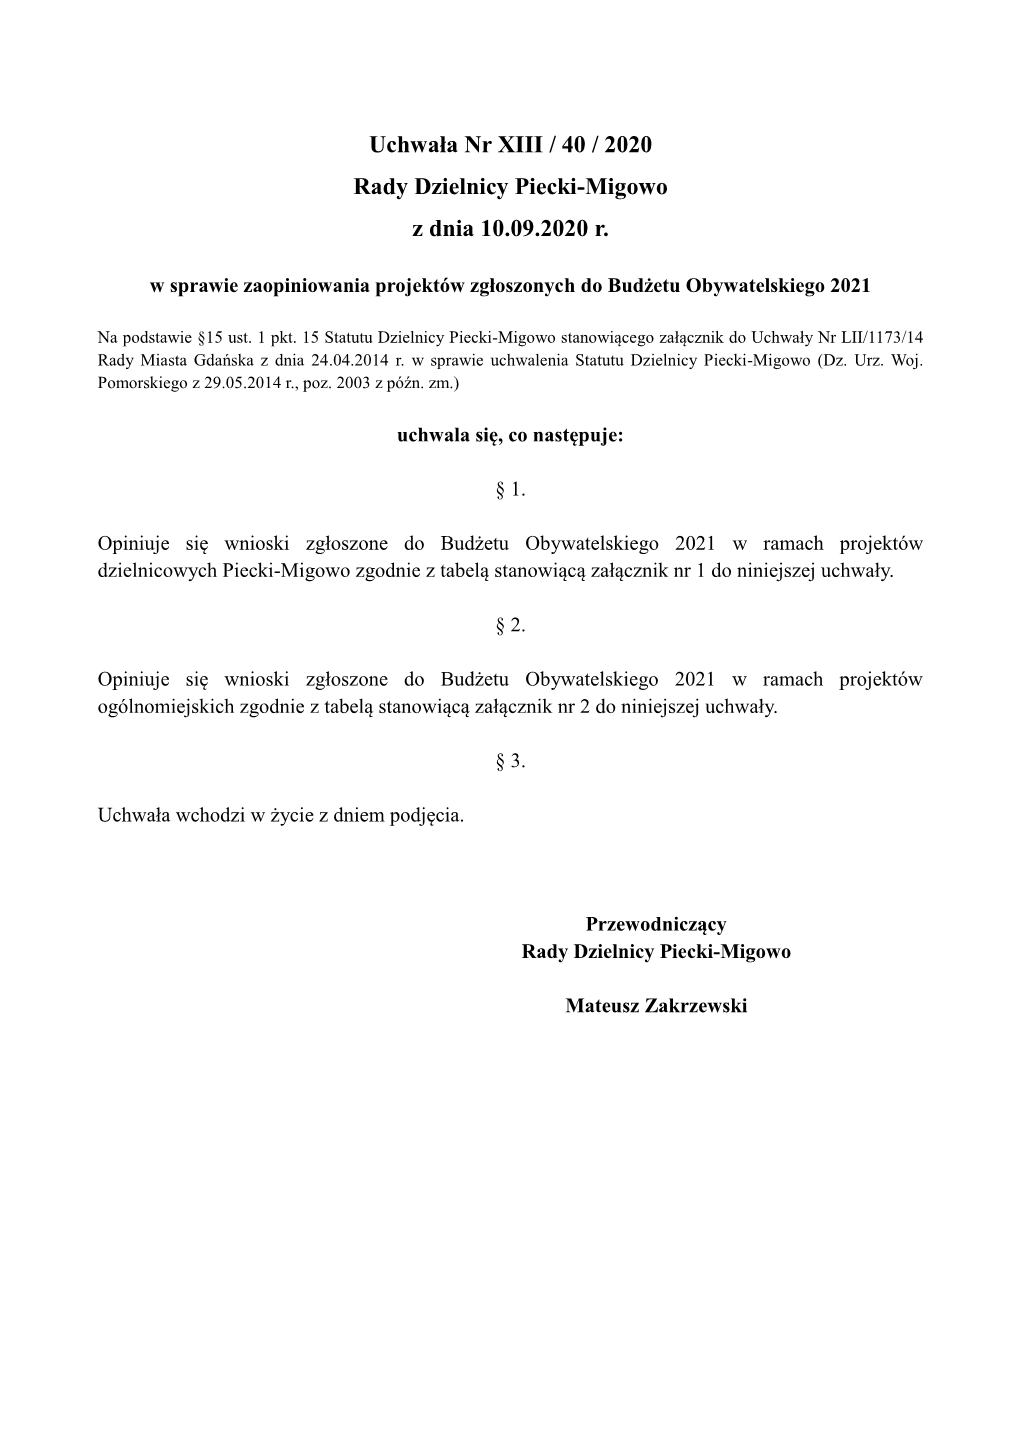 Uchwała Nr XIII / 40 / 2020 Rady Dzielnicy Piecki-Migowo Z Dnia 10.09.2020 R